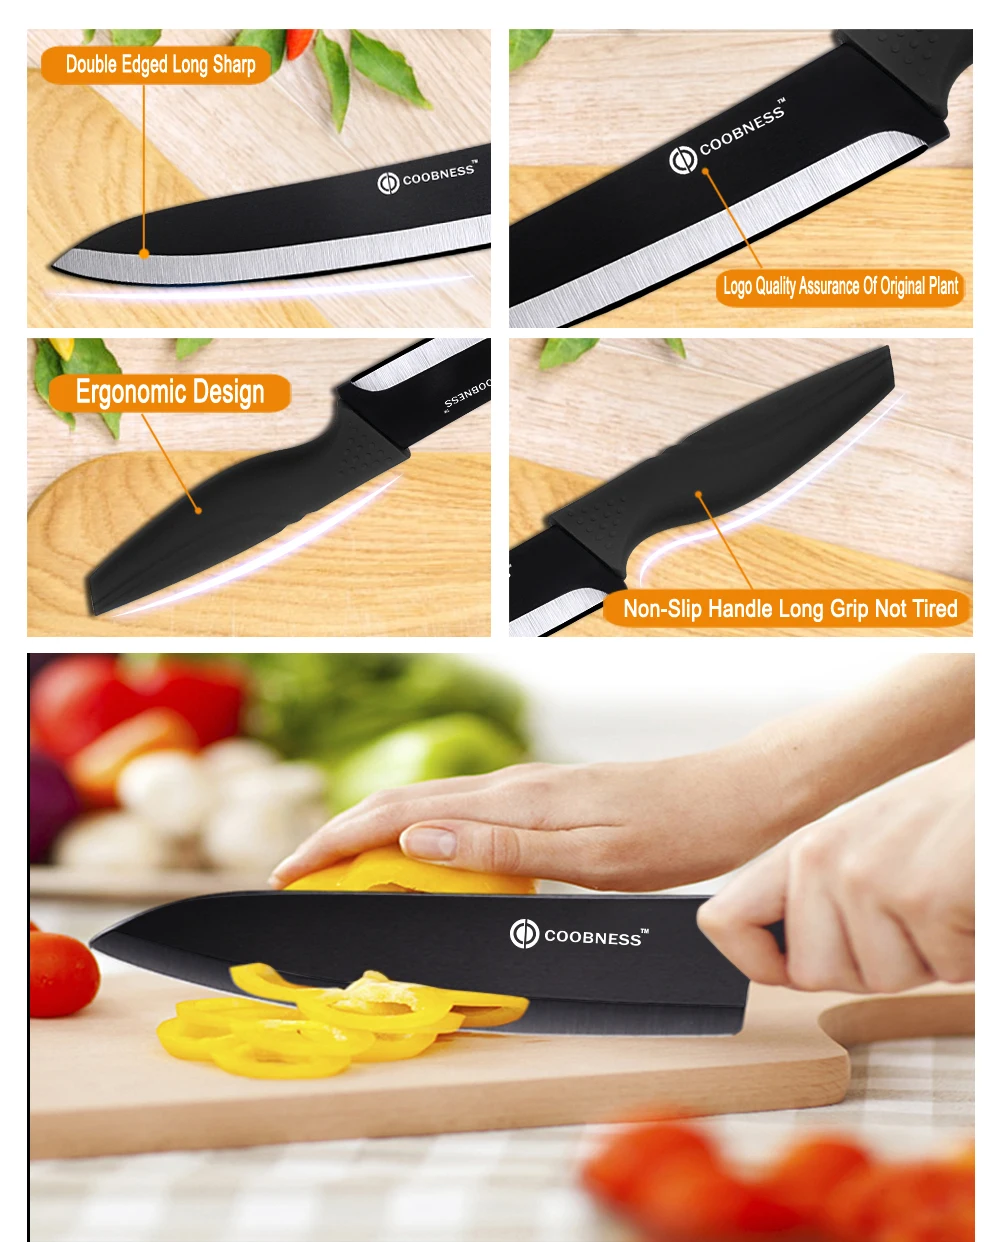 Кухонные ножи COOBNESS с черным лезвием, фирменный керамический нож, набор аксессуаров " для очистки овощей 4", универсальный нож " для нарезки 6", нож шеф-повара+ Овощечистка